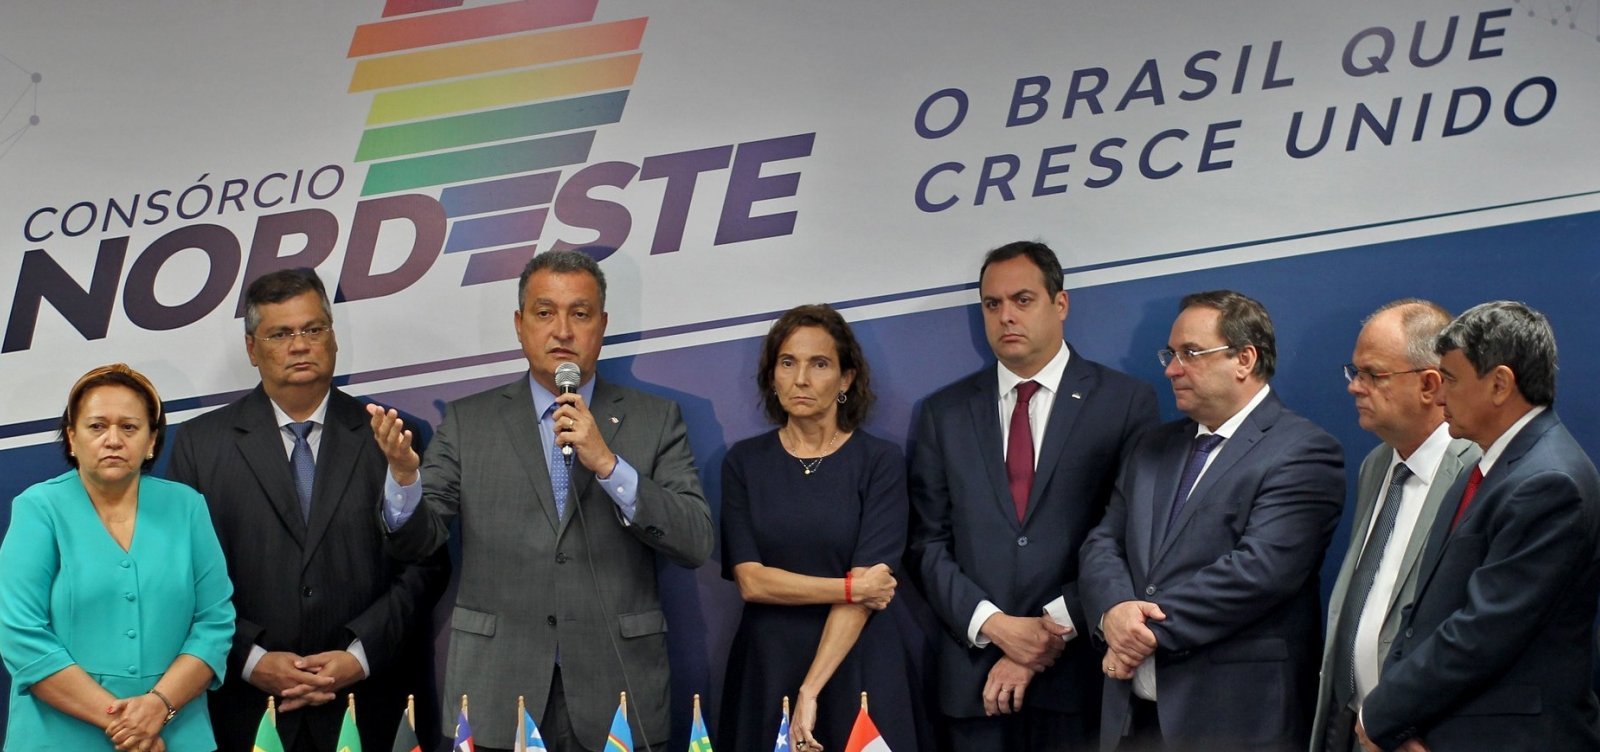 Após anúncio de privatizações, governadores do Nordeste lançam carta de preocupação